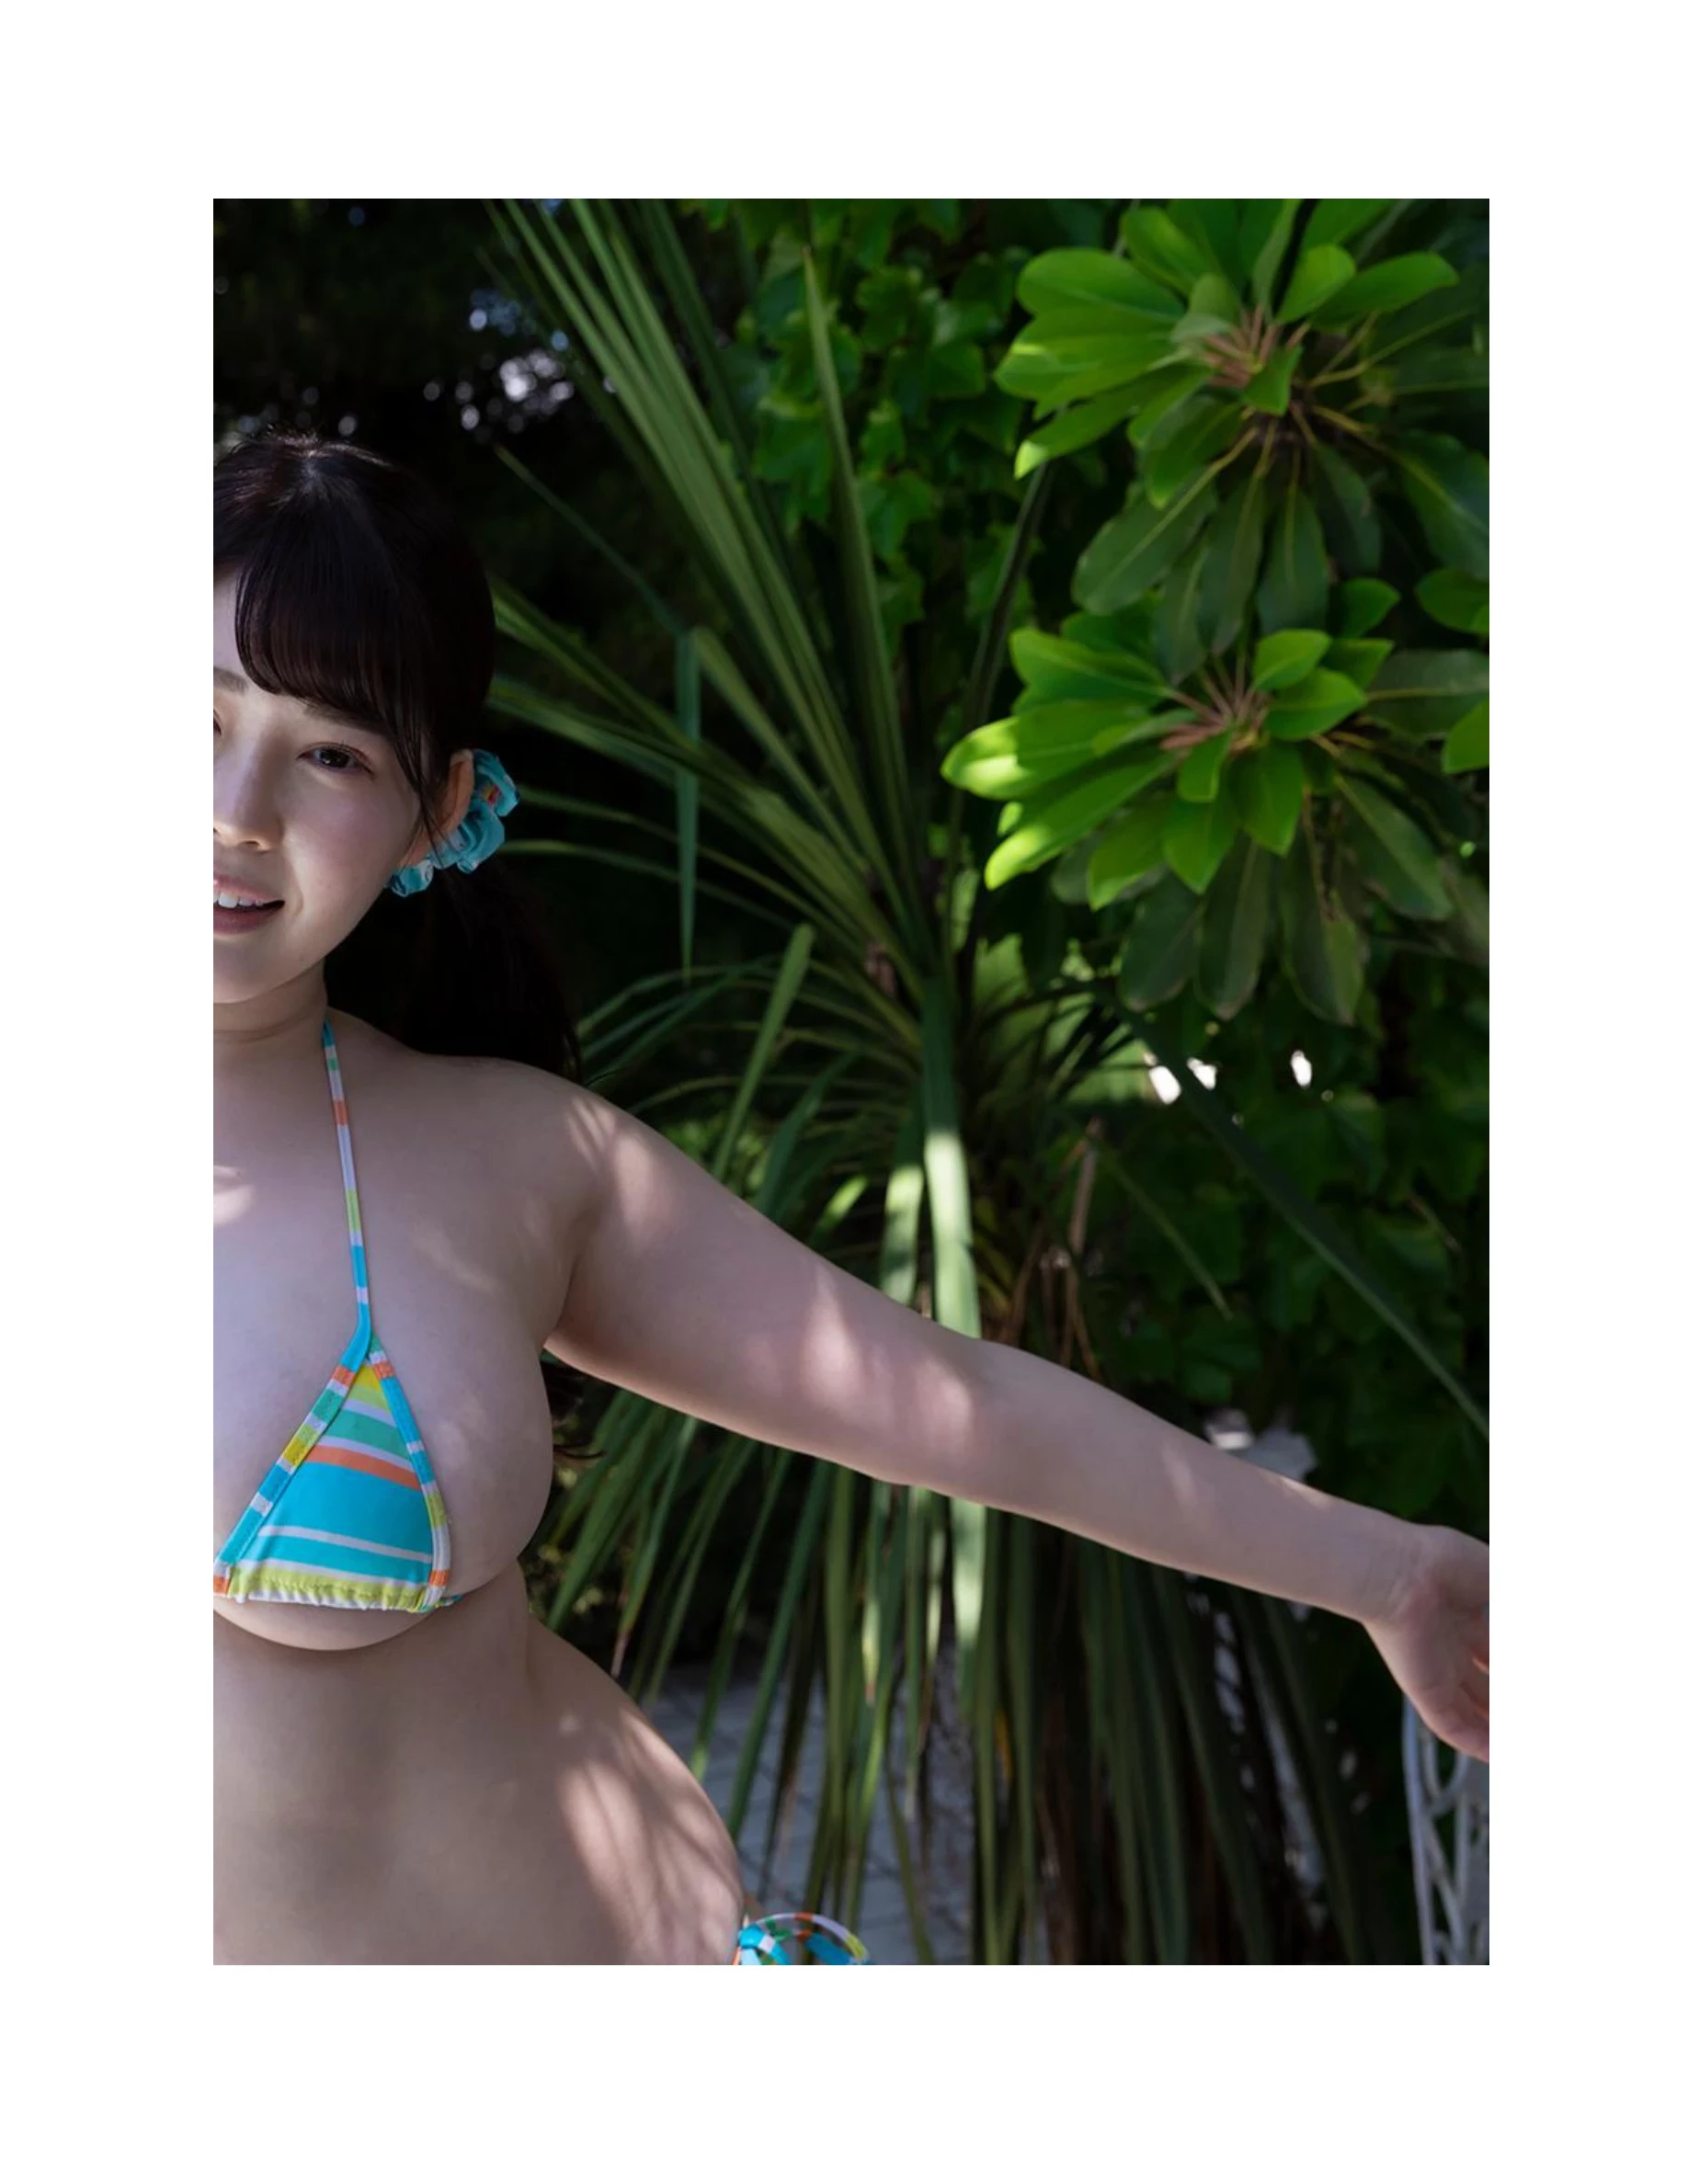 伊川愛梨 卒業旅行 夏 寫真集 J罩杯偶像美少女傳説-765